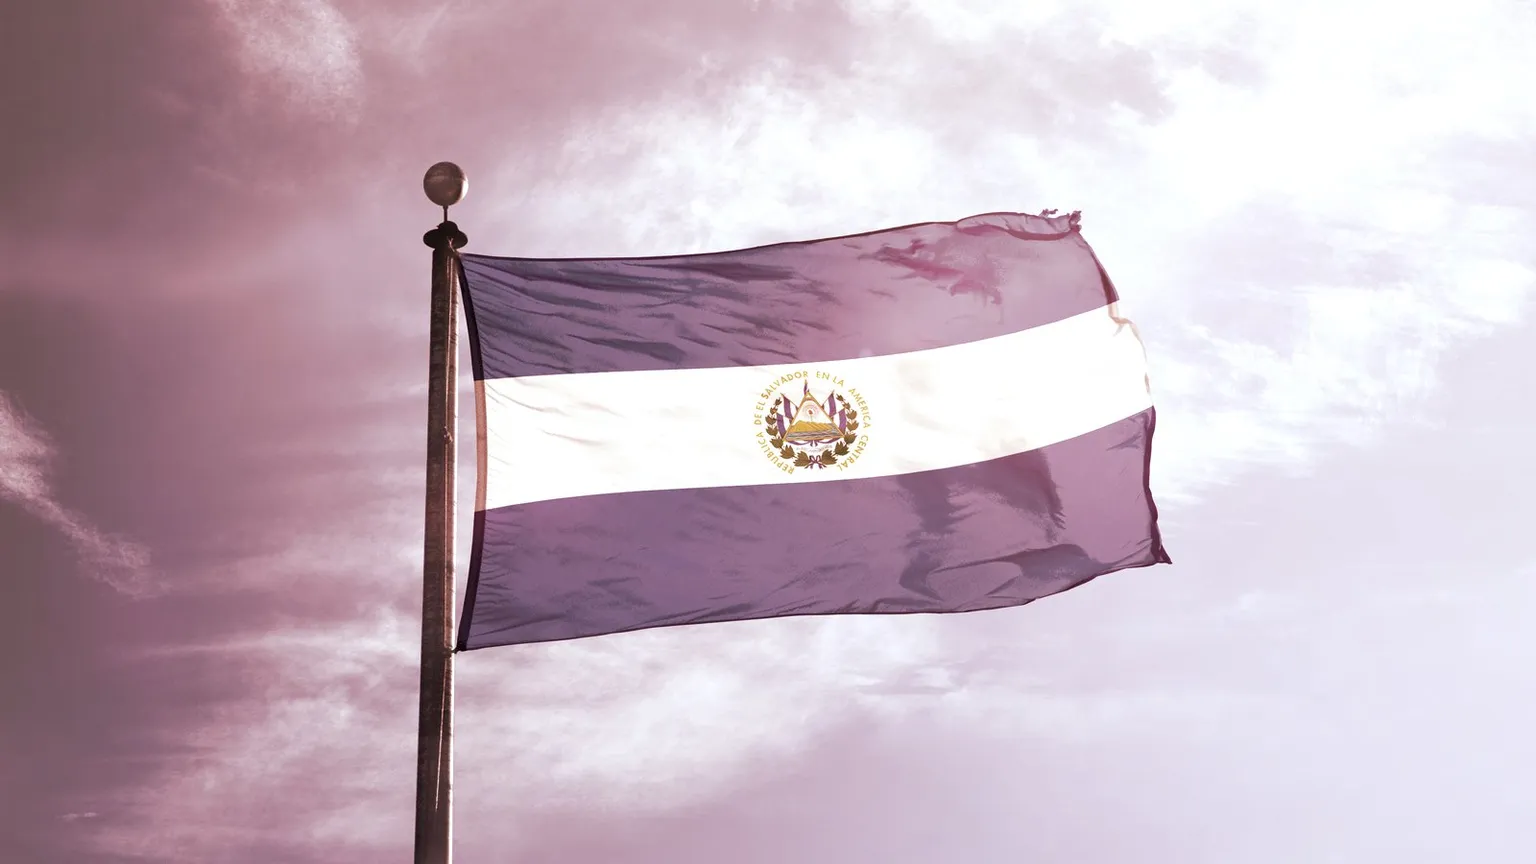 Bandera de El Salvador en el mástil. Imagen: Shutterstock